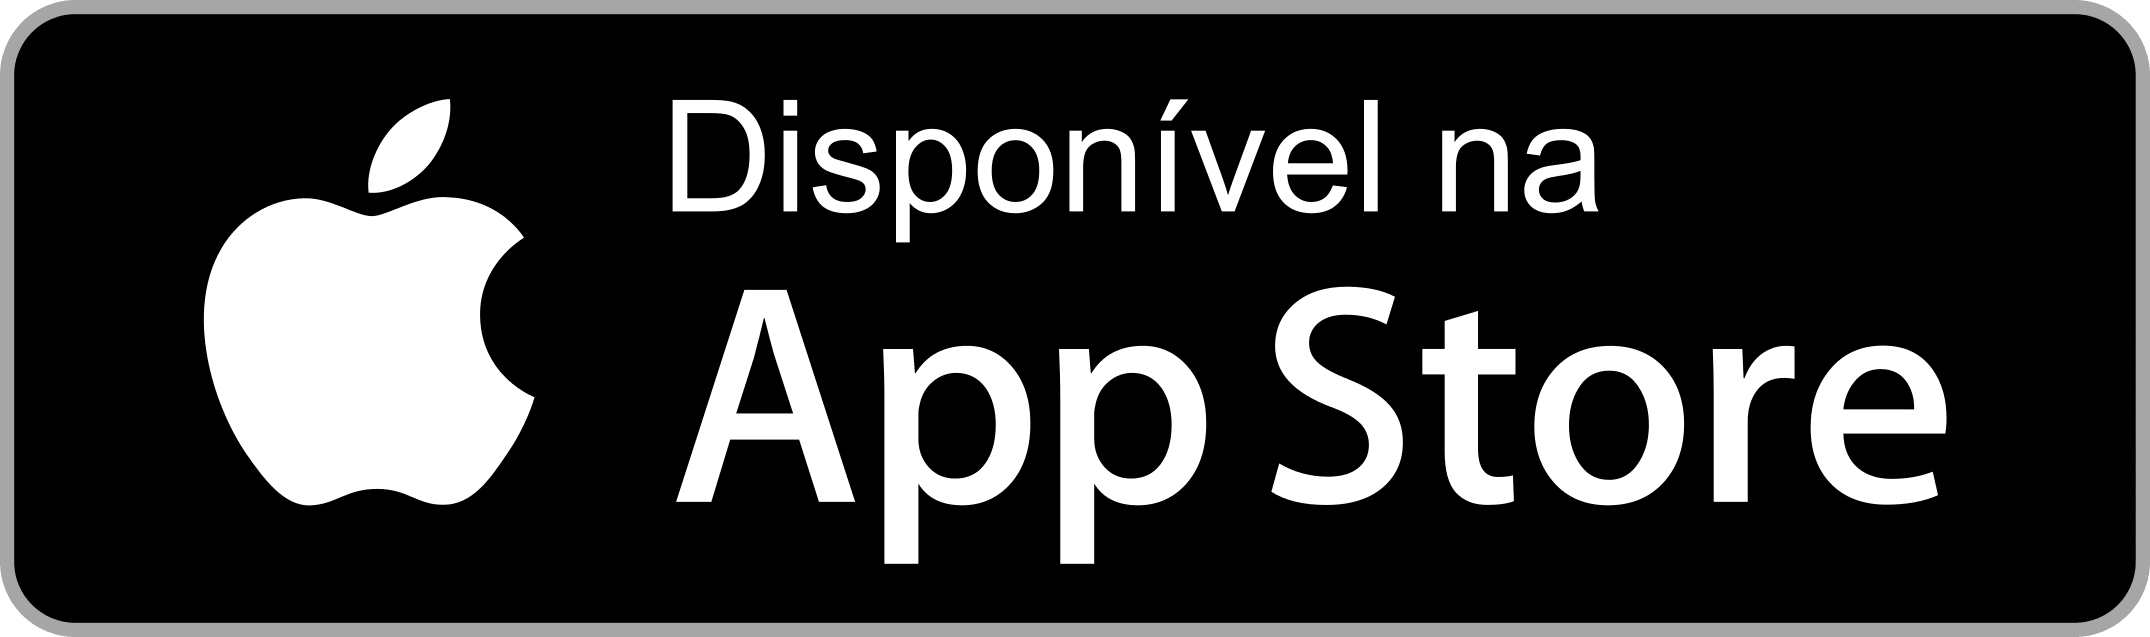 App Store Cadê Meu Ônibus